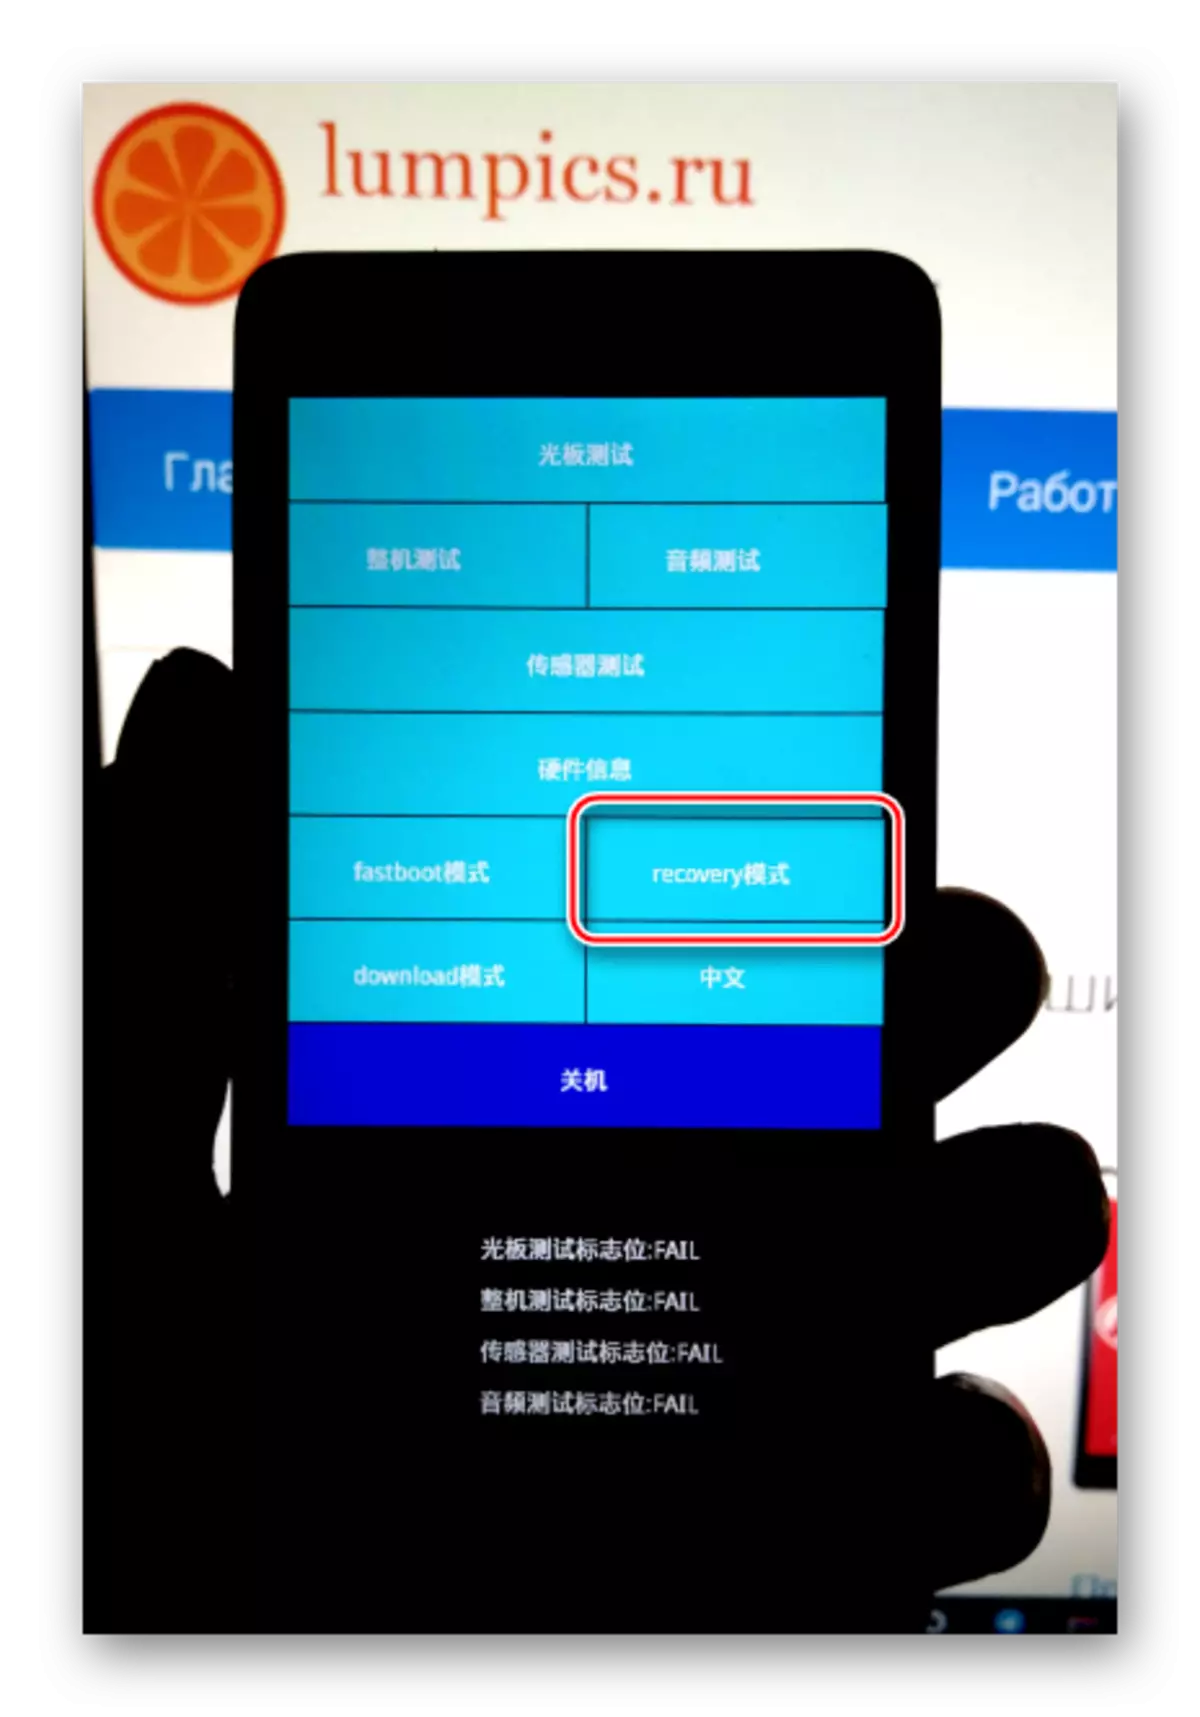 Xiaomi Redmi 2 kuras reakiron de preloader